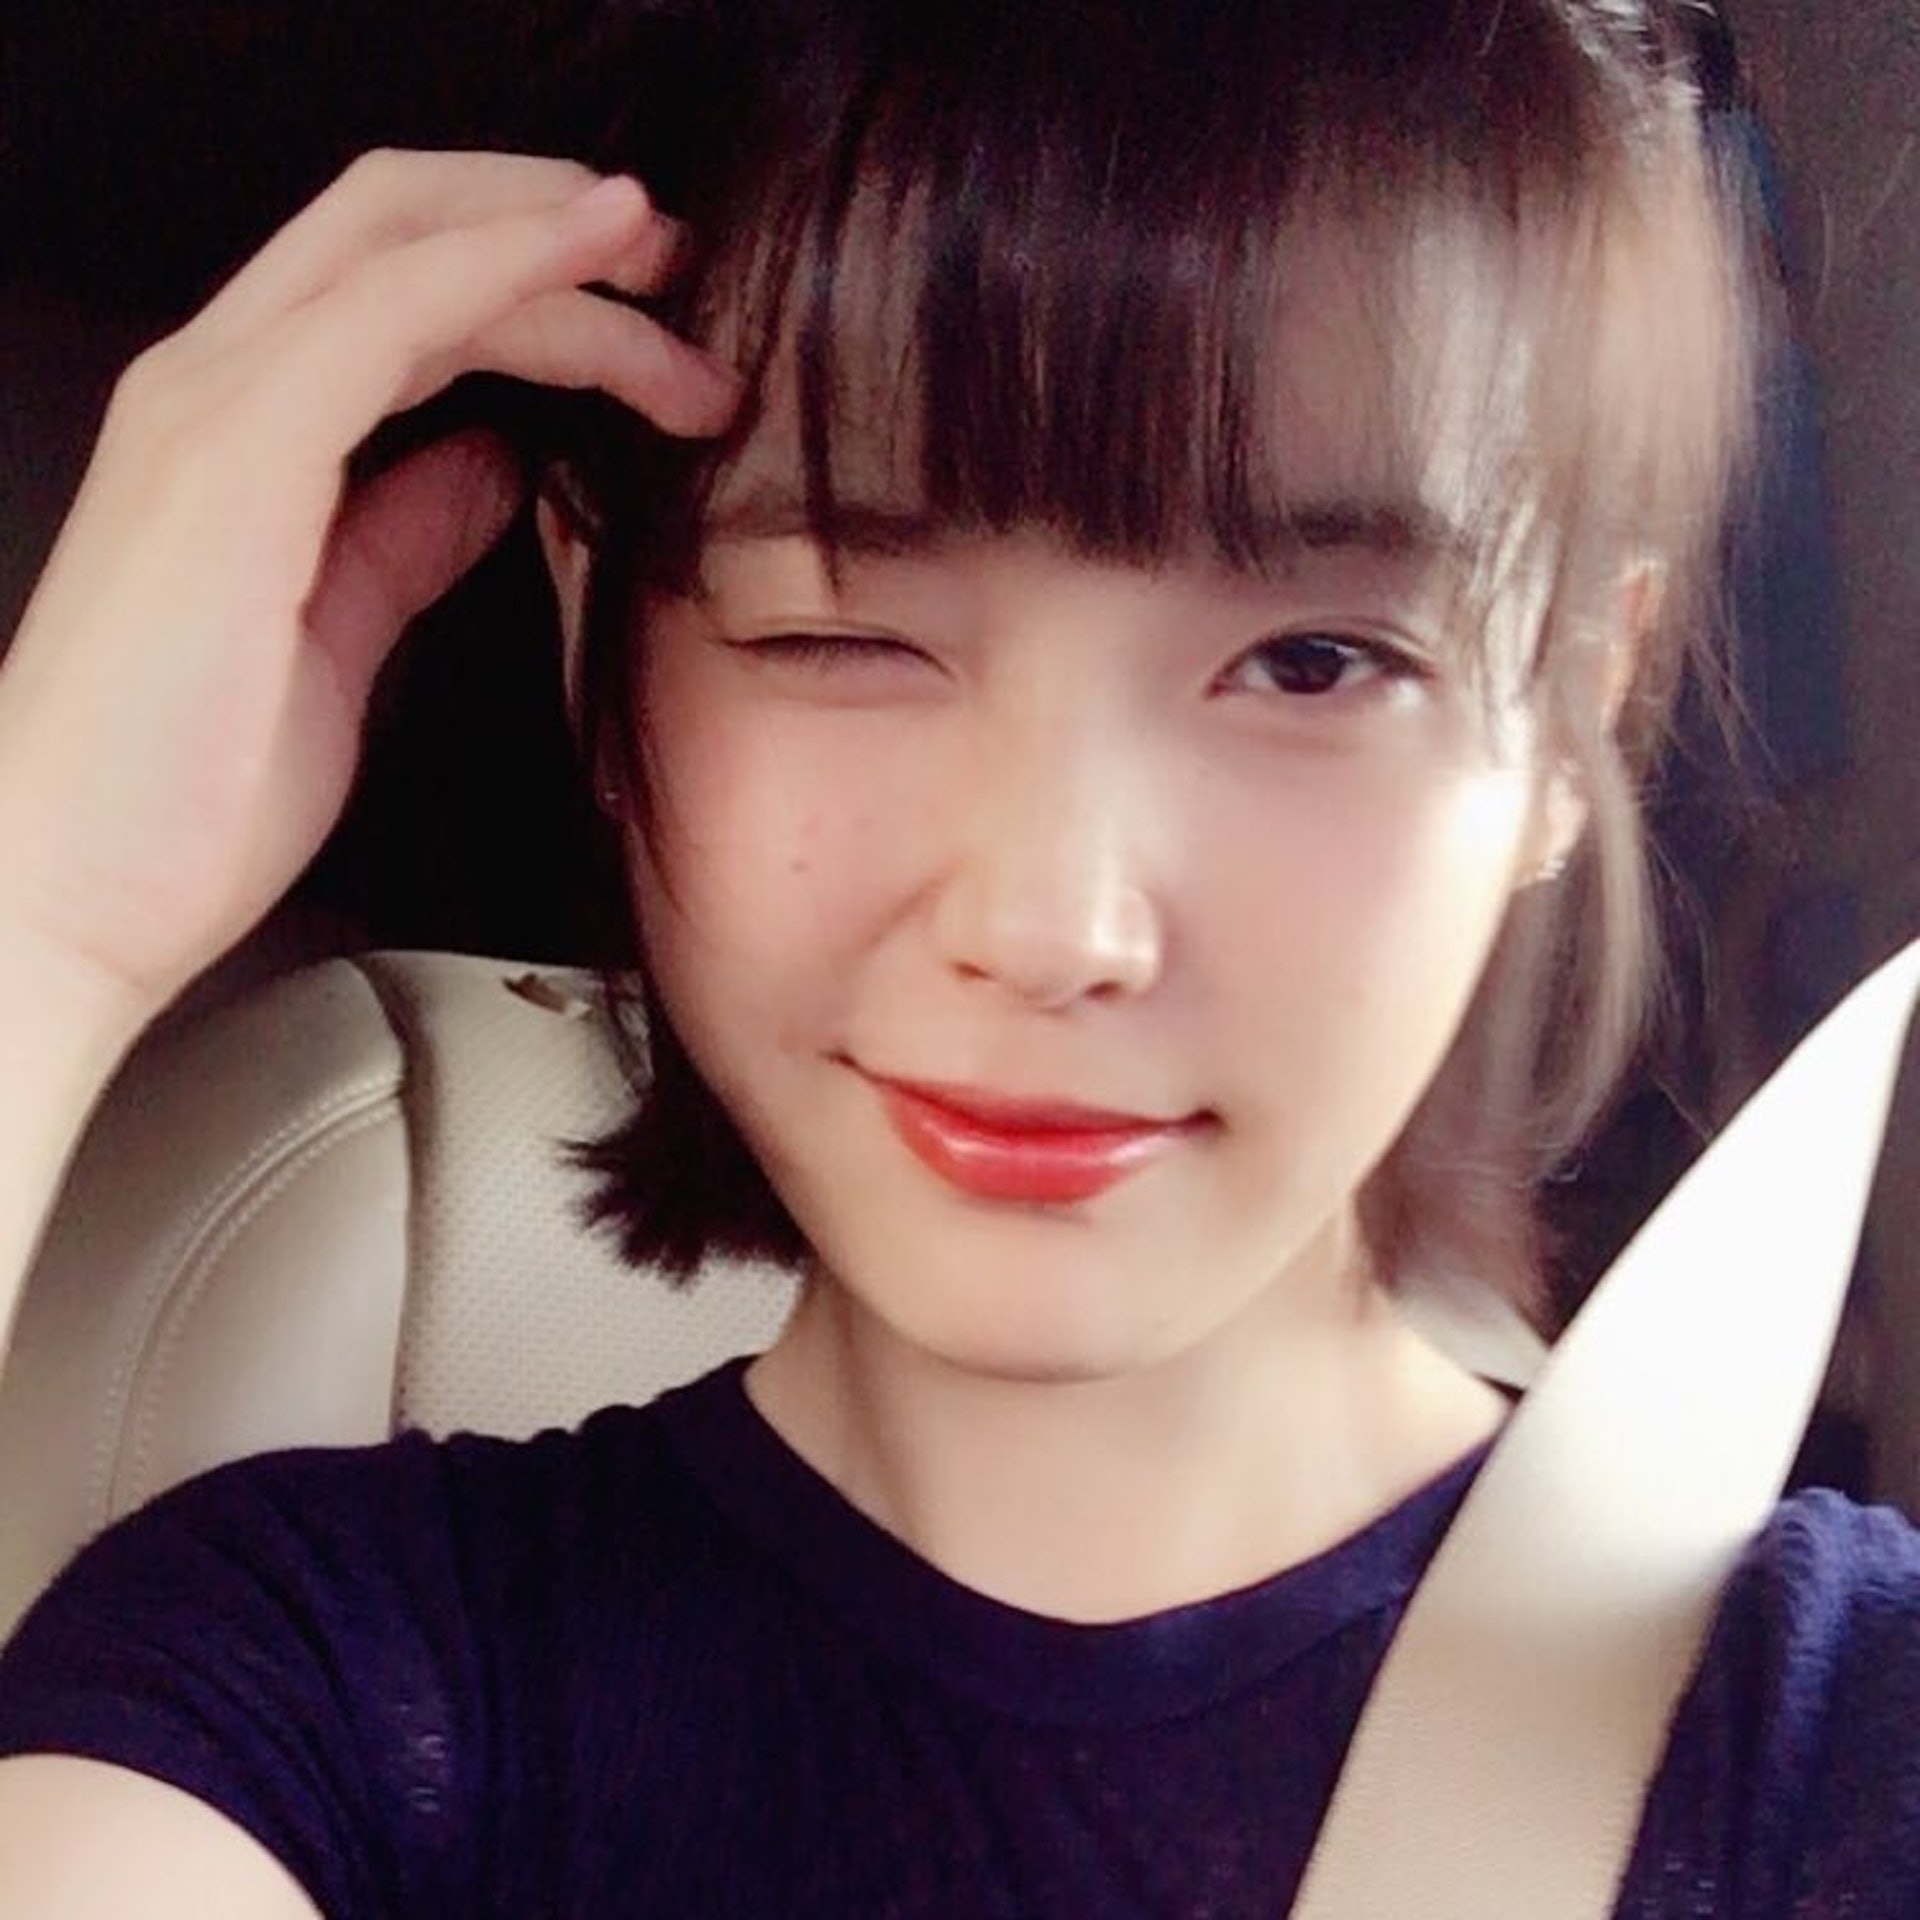 韓國歌手IU也剪上氧氧瀏海。(dlwlrma@Instagram)